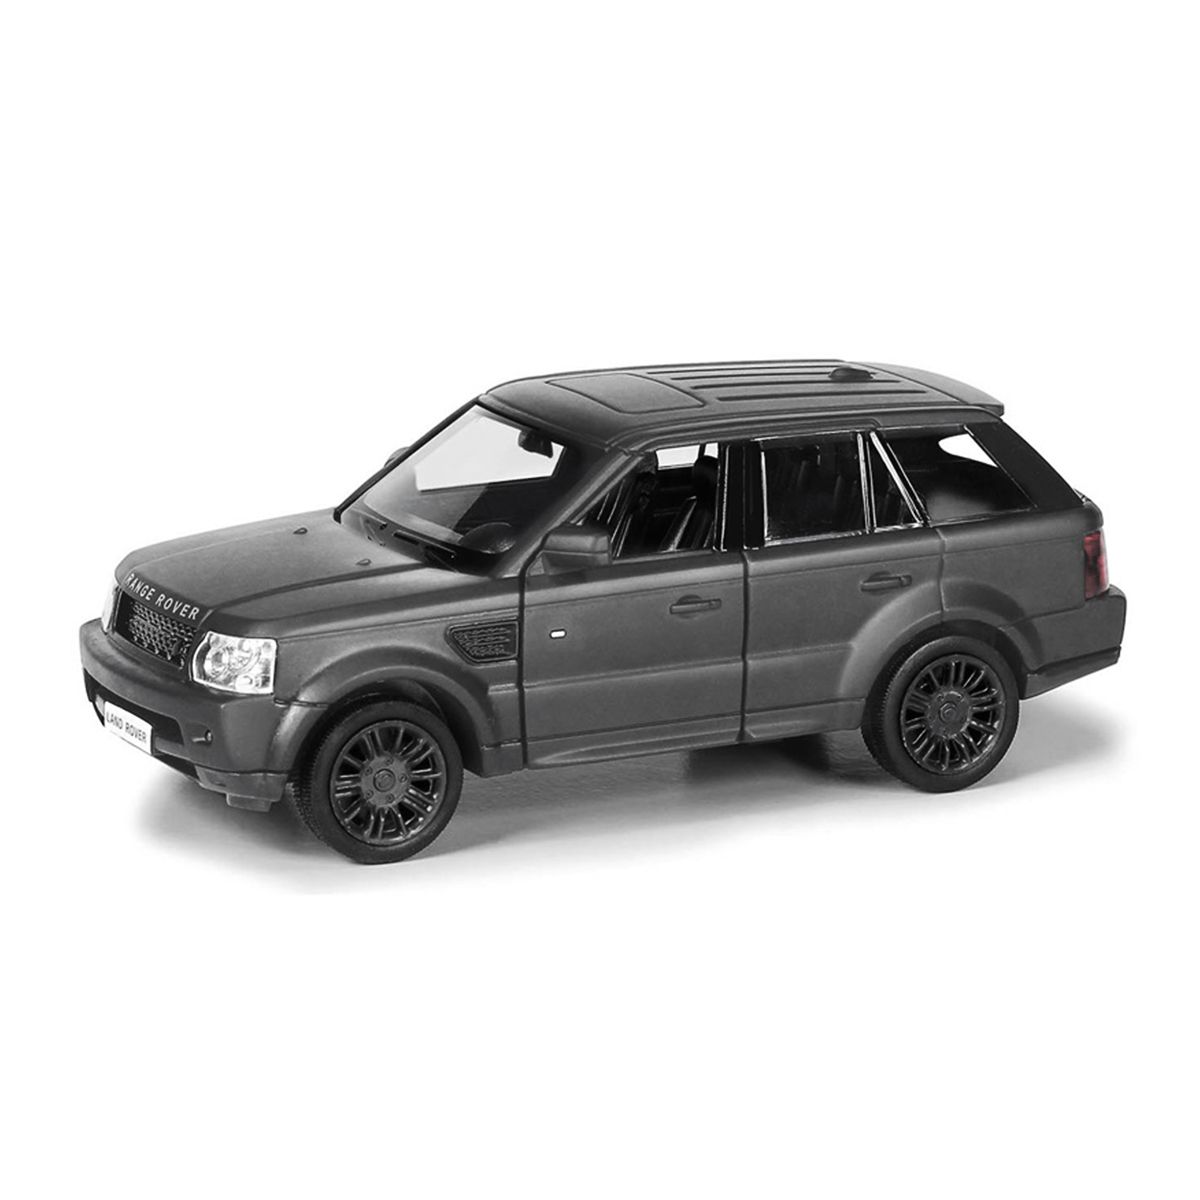 Автомодель инерционная "Land Rover Range Rover Sport"